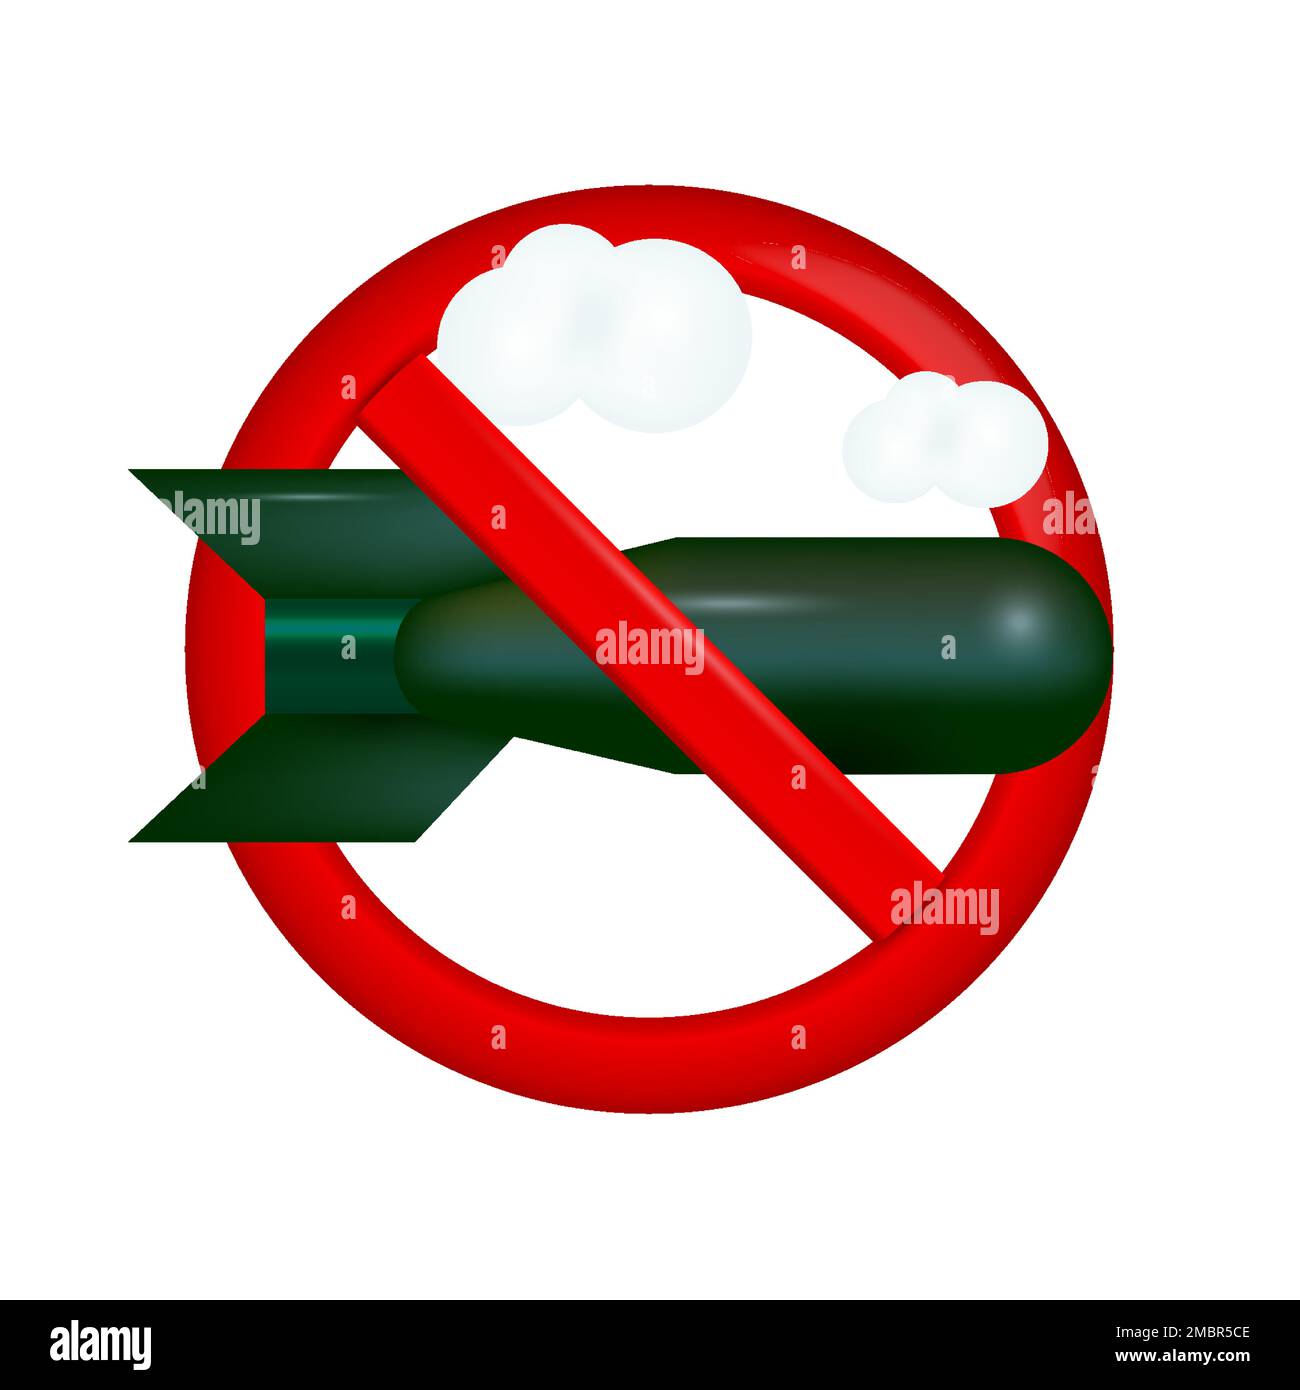 Stop bombardamento divieto segno. Immagine vettoriale della bomba in caduta 3D isolata su sfondo bianco. Illustrazione Vettoriale